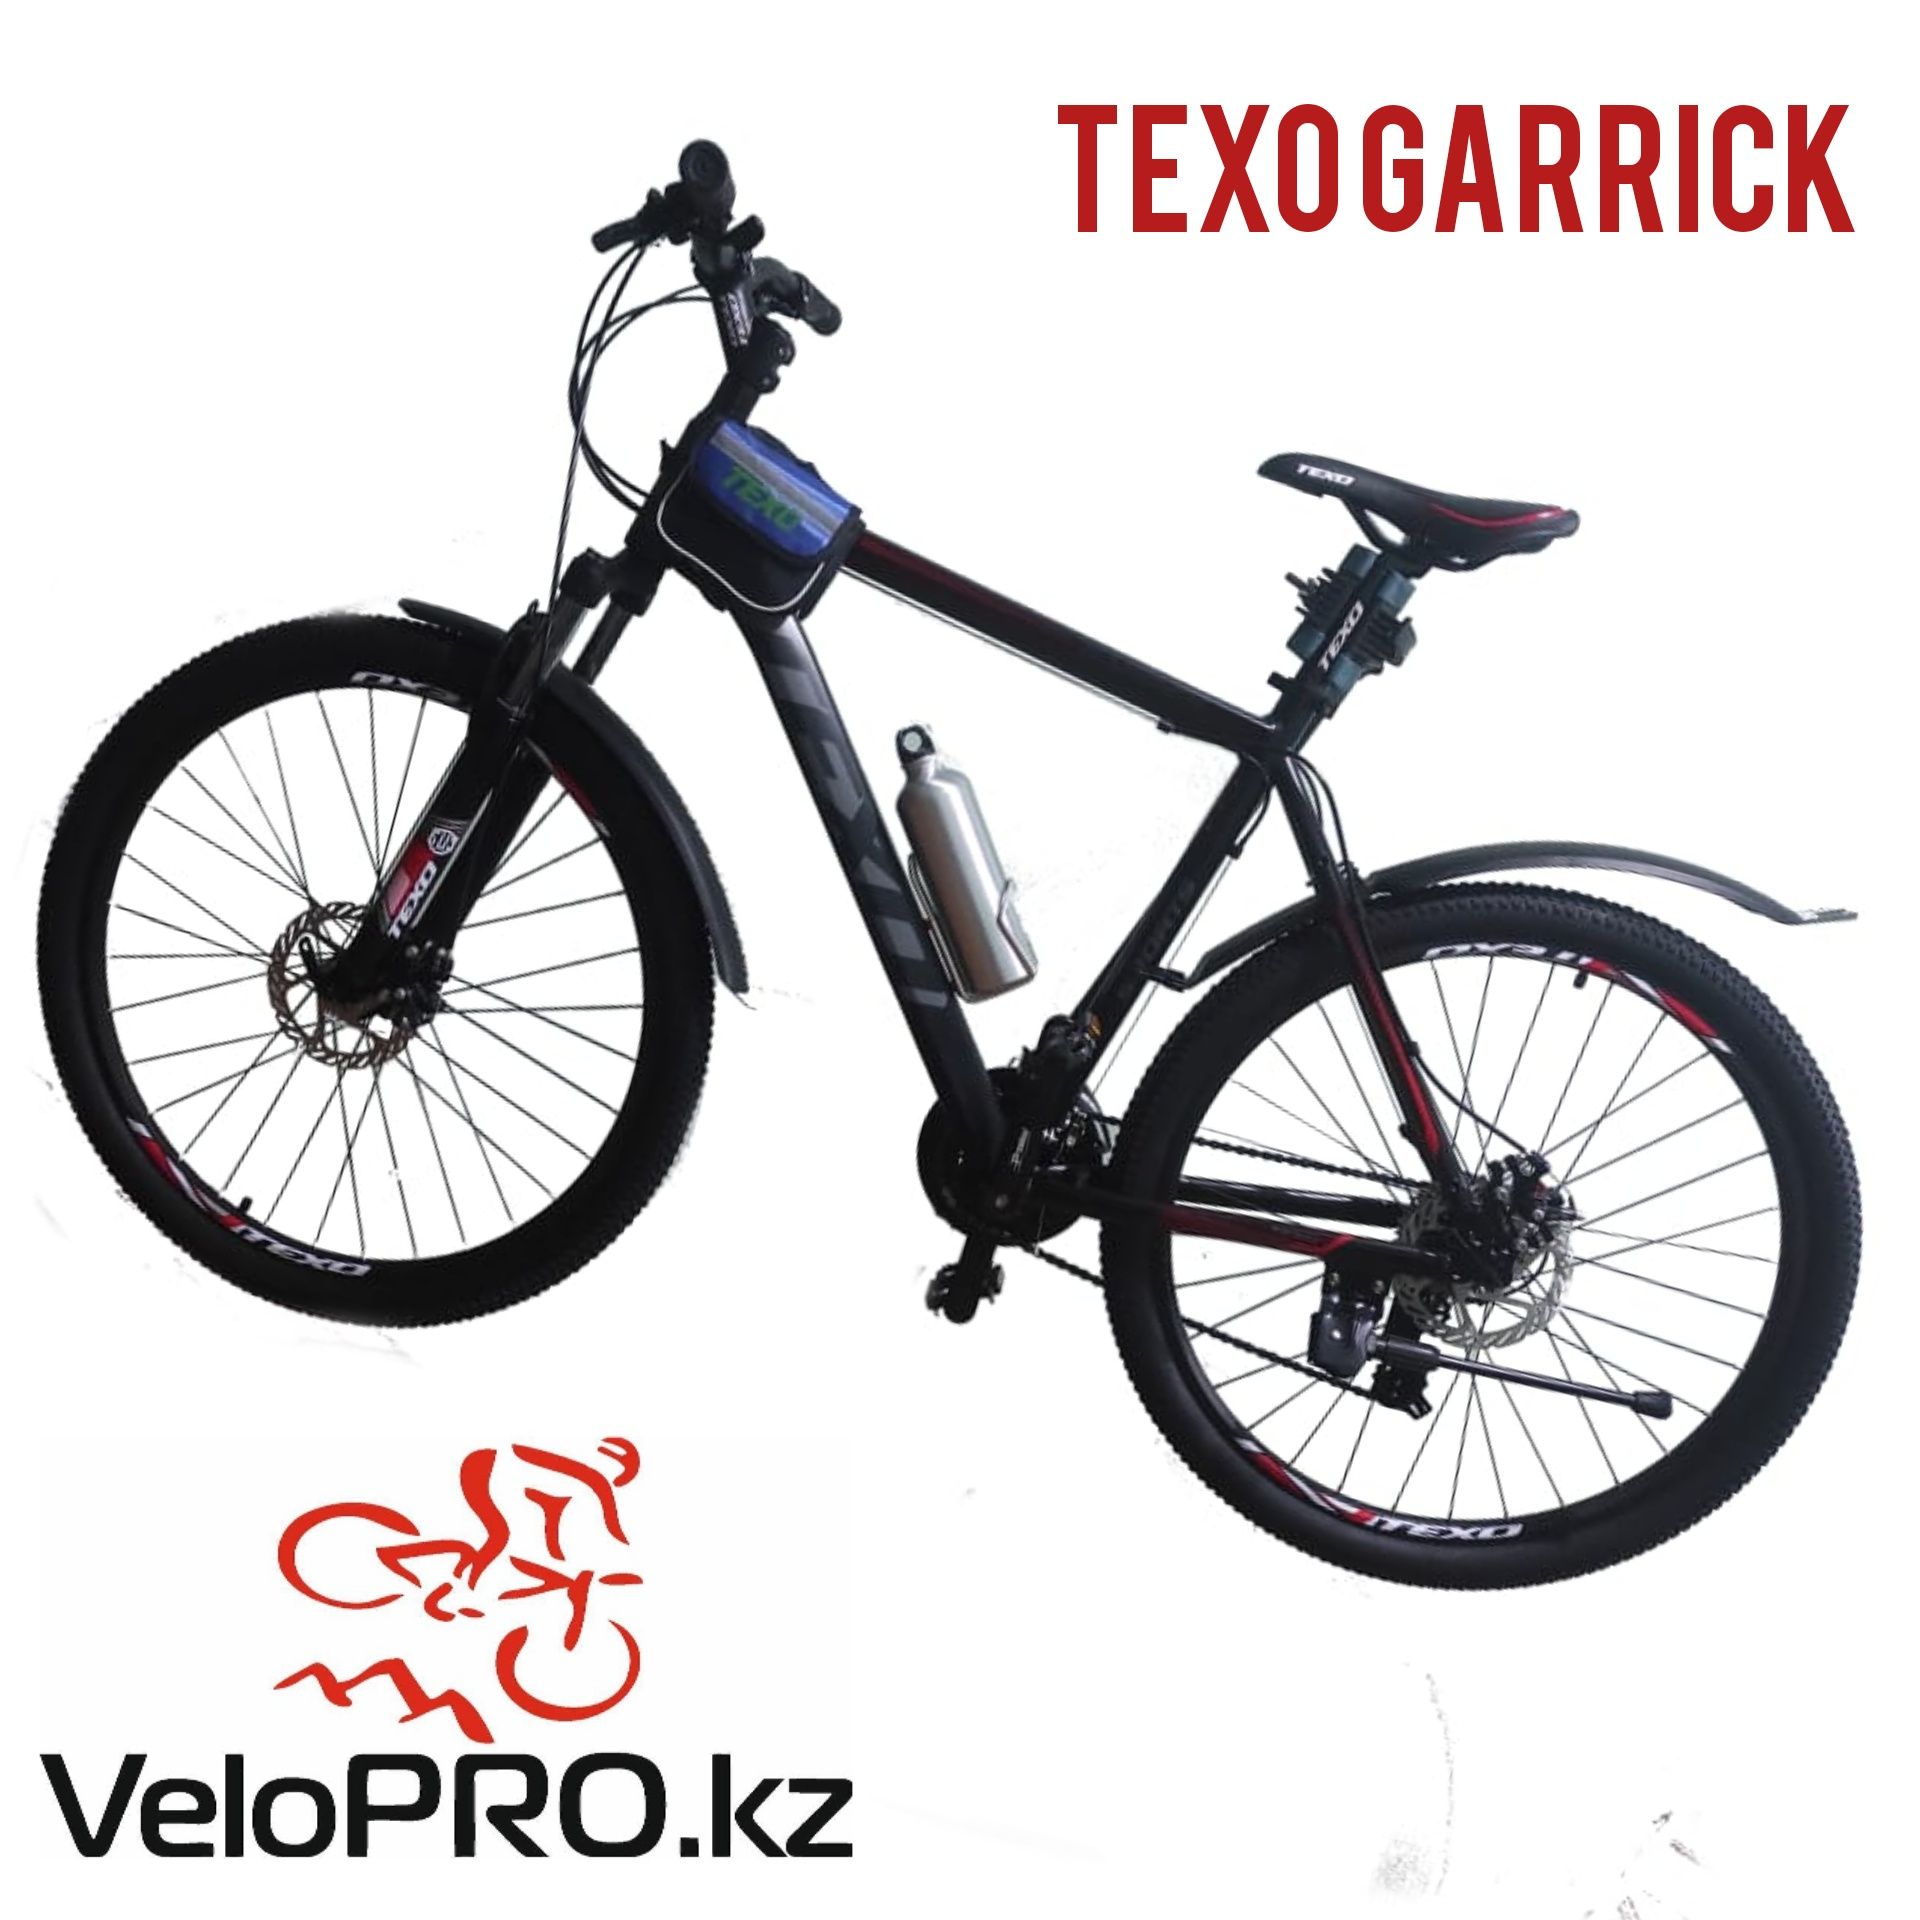 Велосипед Texo Laguna Arena Garrick Expert Pro. Гарантия 3 м. Рассрочк